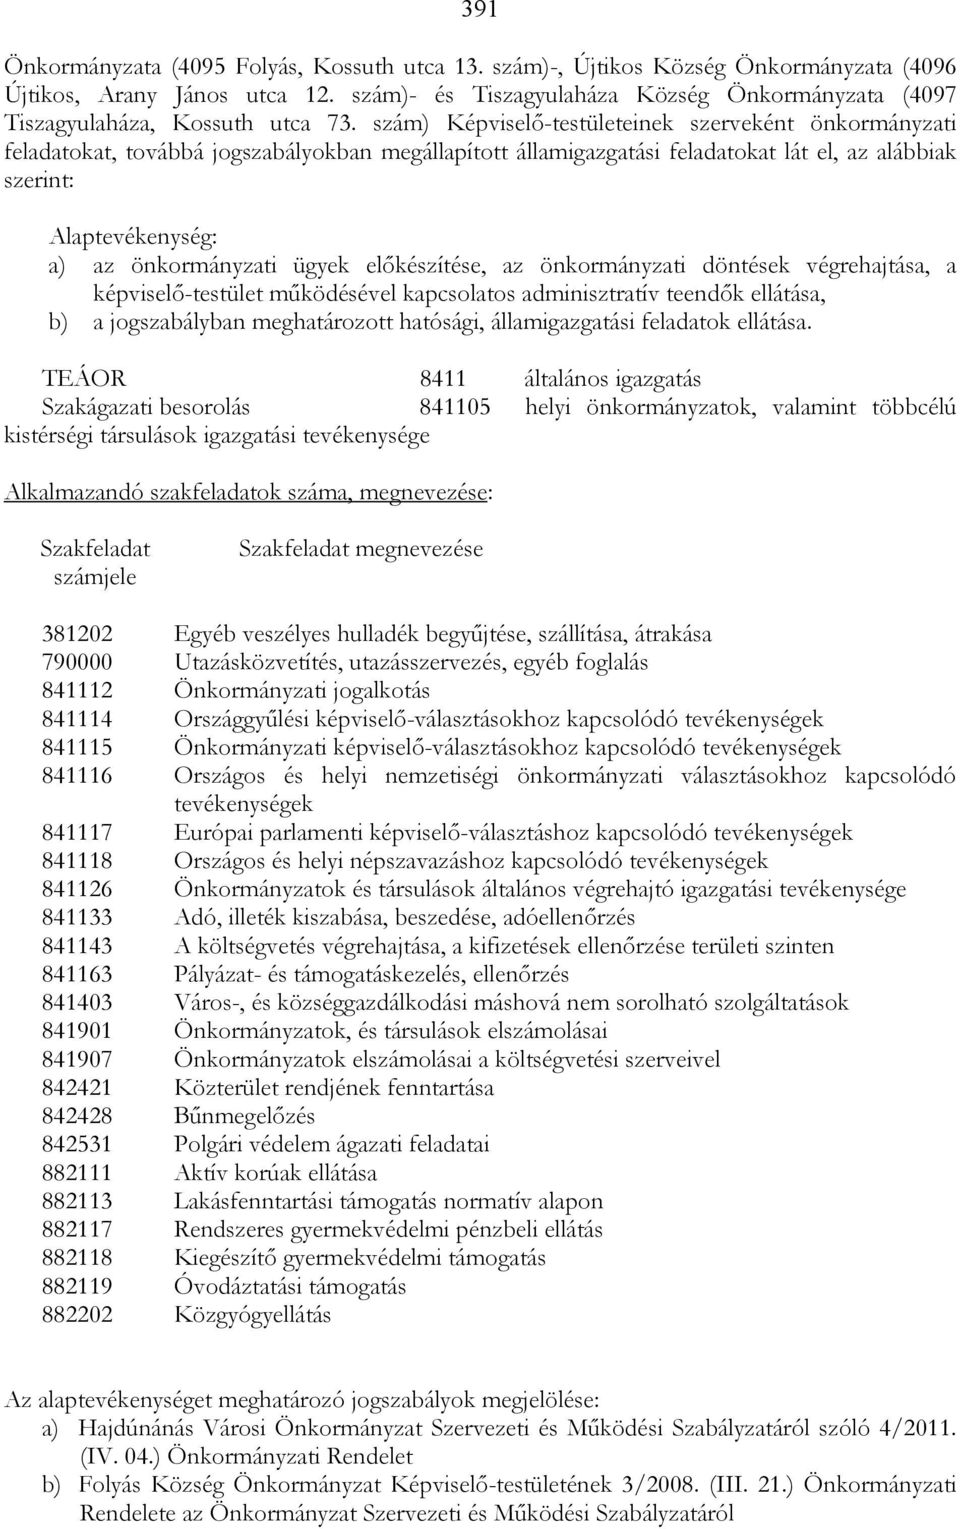 szám) Képviselı-testületeinek szerveként önkormányzati feladatokat, továbbá jogszabályokban megállapított államigazgatási feladatokat lát el, az alábbiak szerint: Alaptevékenység: a) az önkormányzati